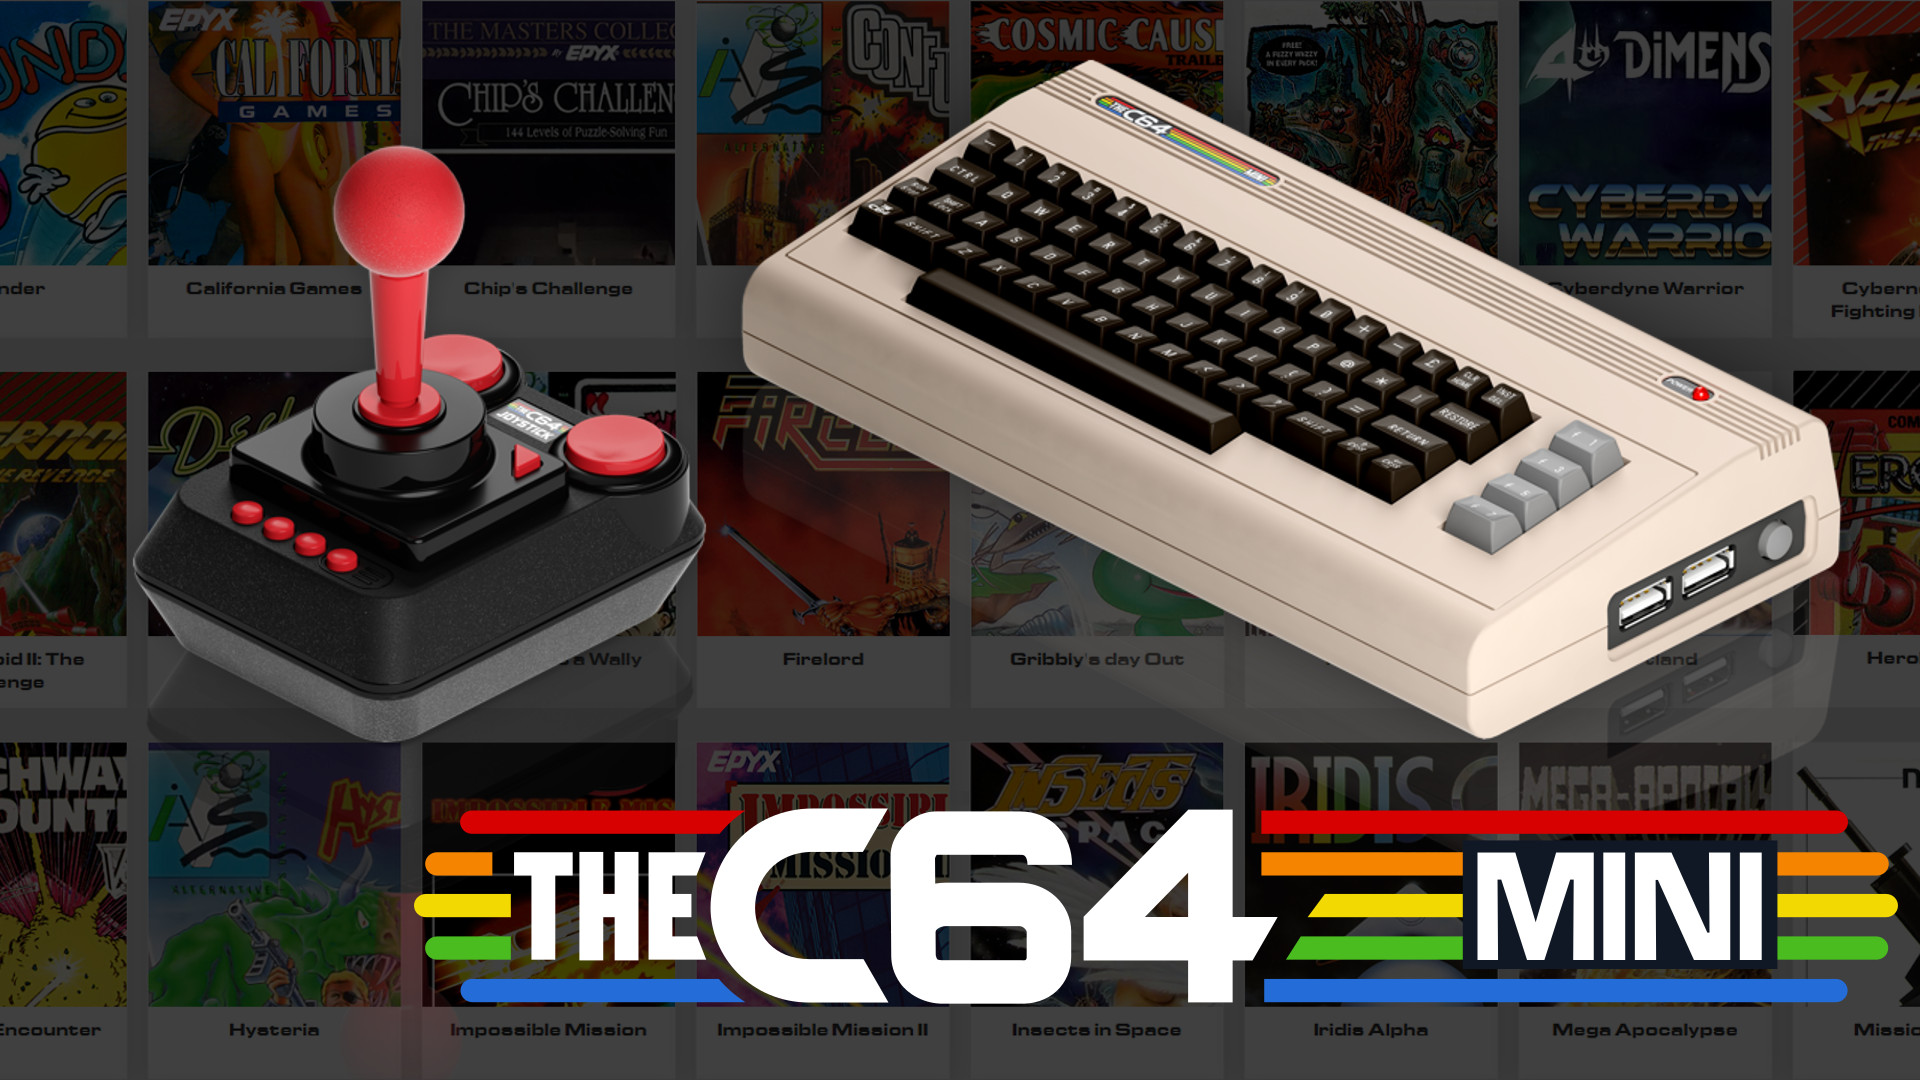 Retro Games will release a modern mini version of the legendary PC Commodore 64